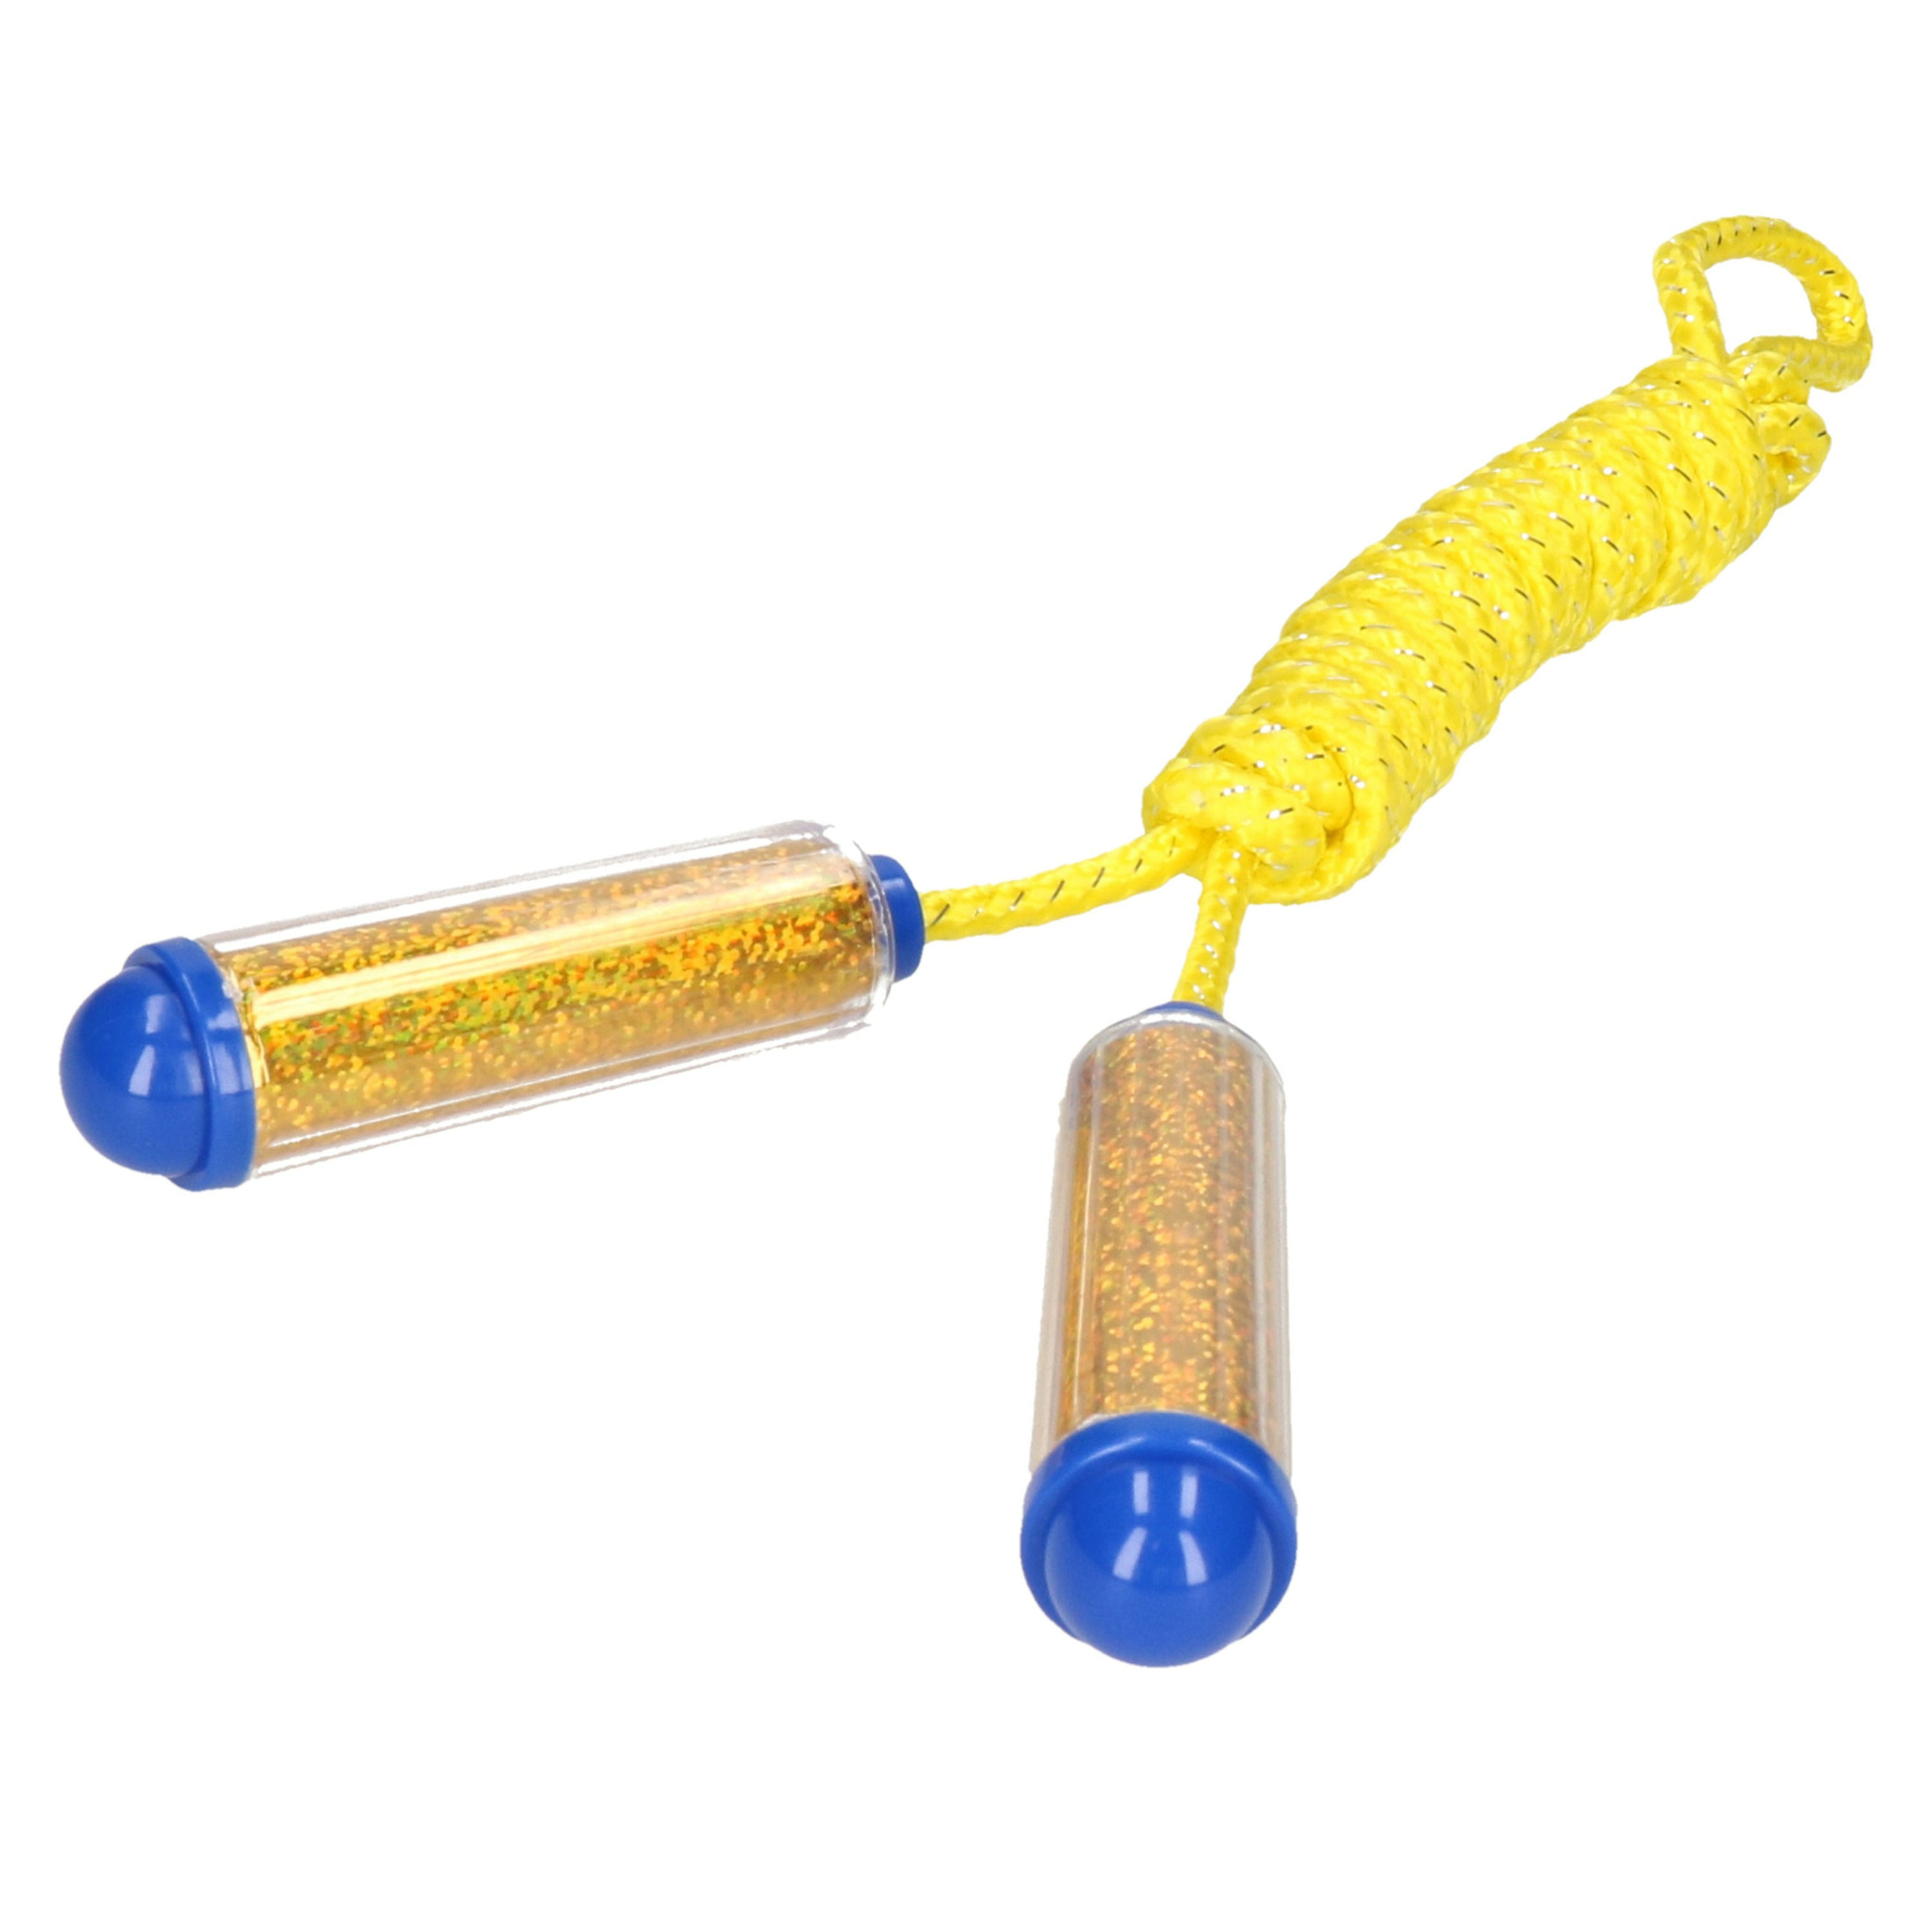 Springtouw met kunststof handvatten geel-goud 210 cm speelgoed